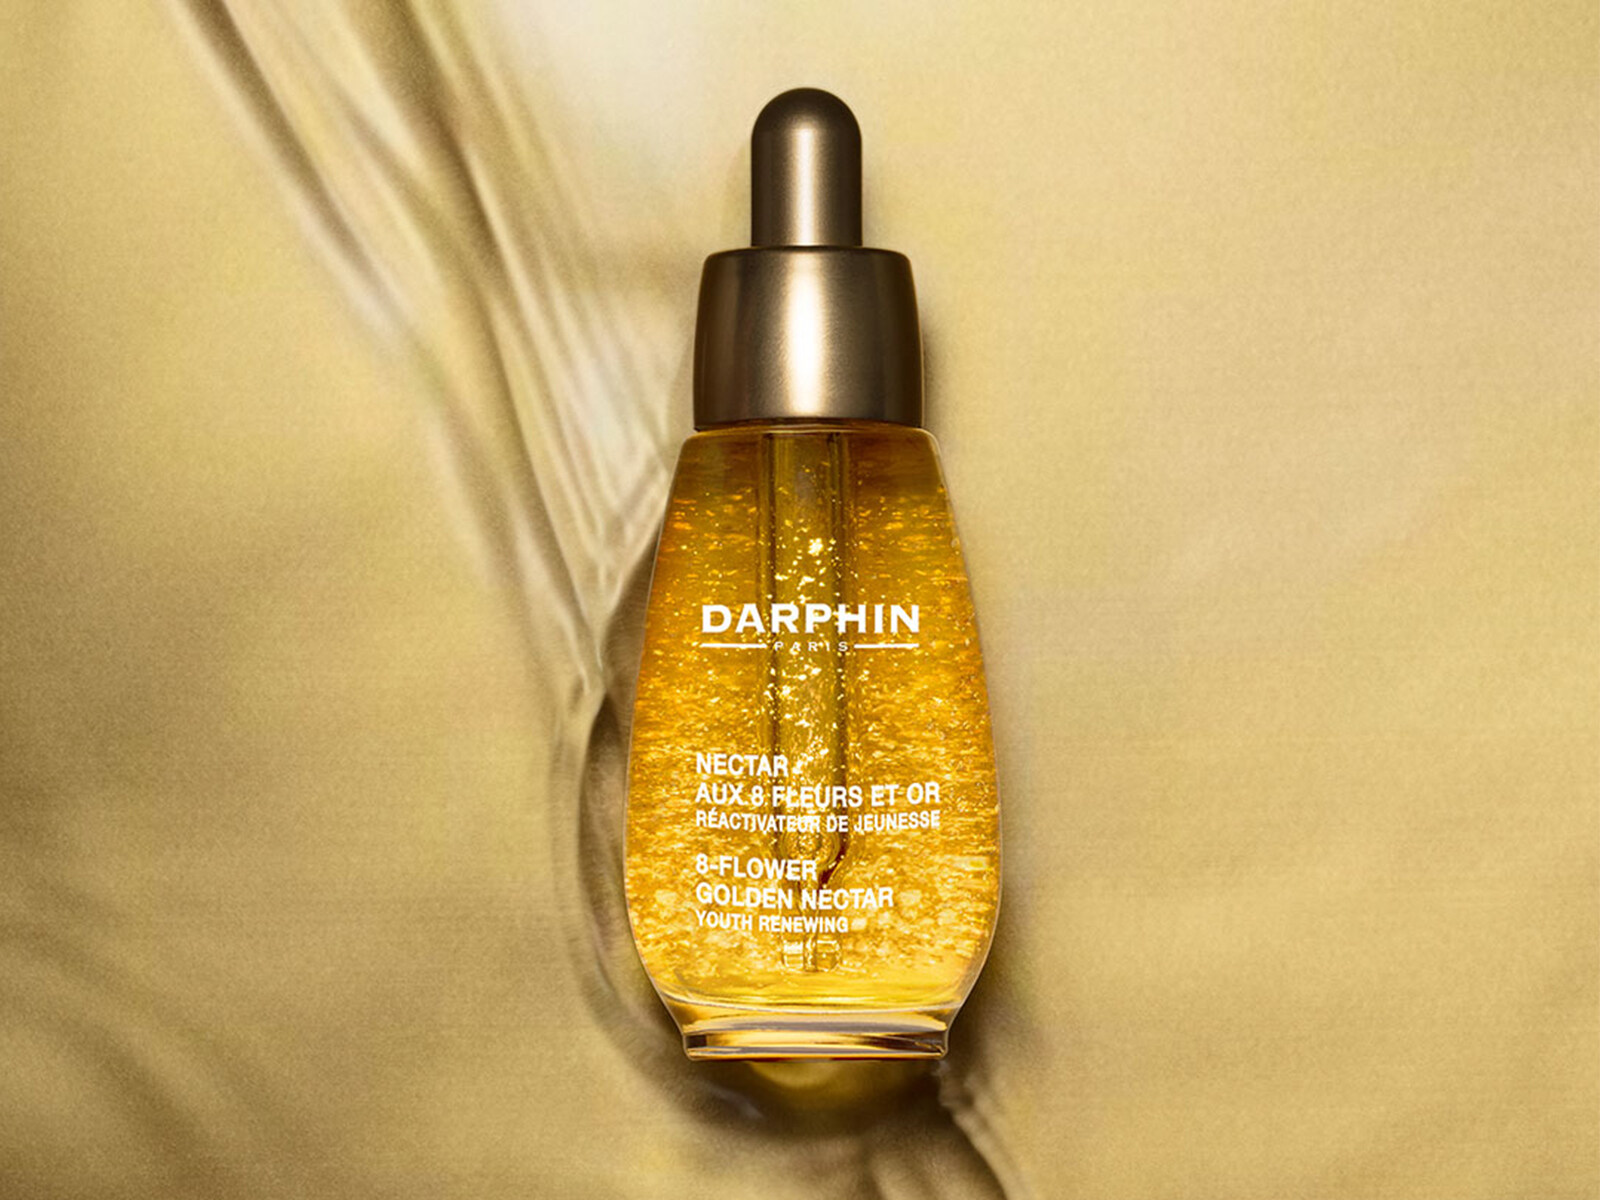 Darphin八花金箔極緻修護精華油首次加入24K金箔，帶來全新奢華護膚體驗。